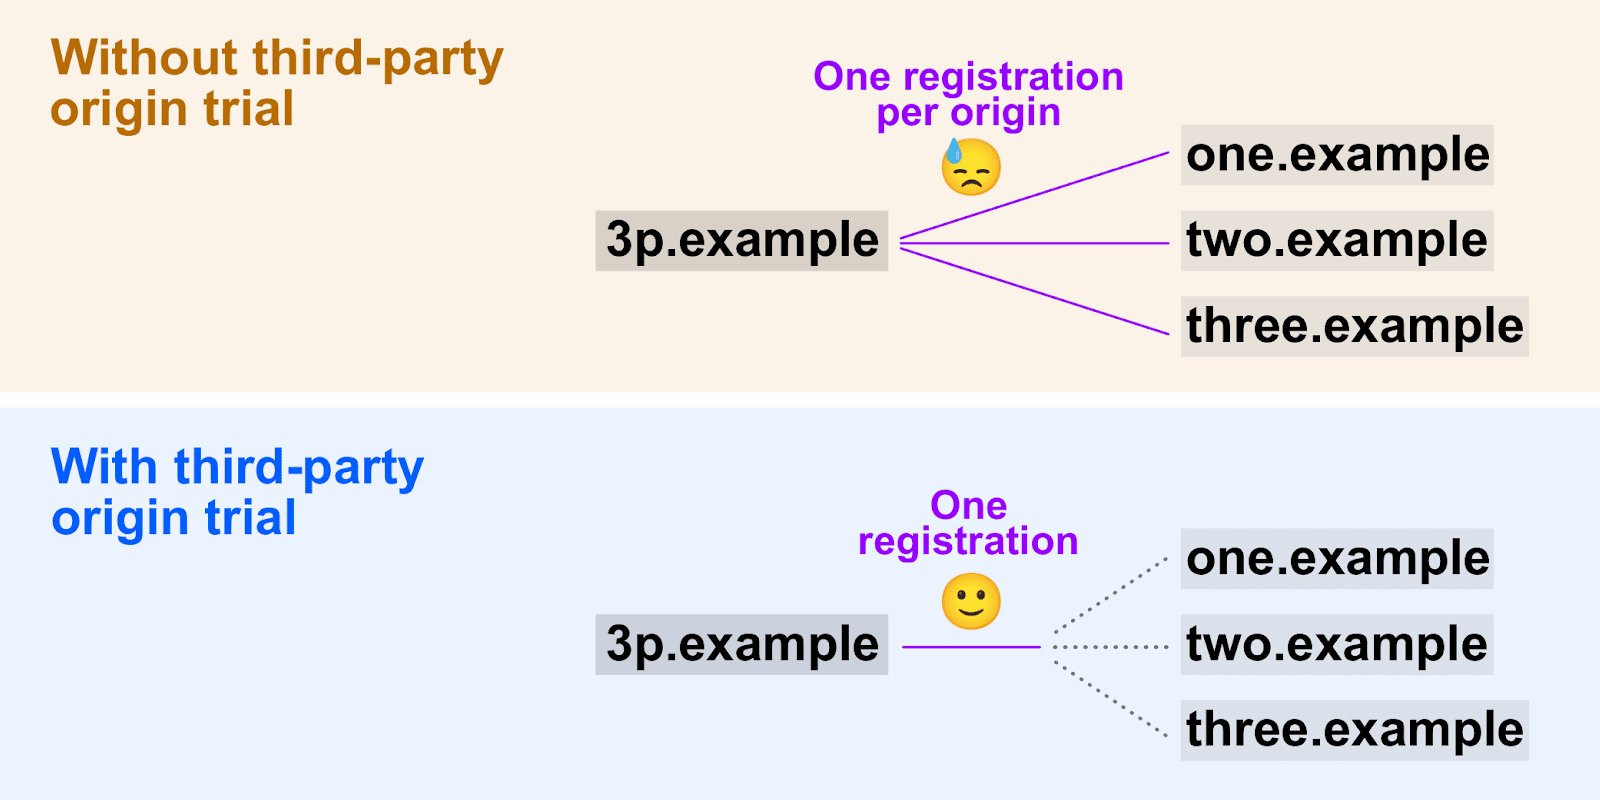 نموداری که نشان می‌دهد چگونه آزمایش‌های اولیه شخص ثالث امکان استفاده از یک رمز ثبت واحد را در چندین مبدا فراهم می‌کند.